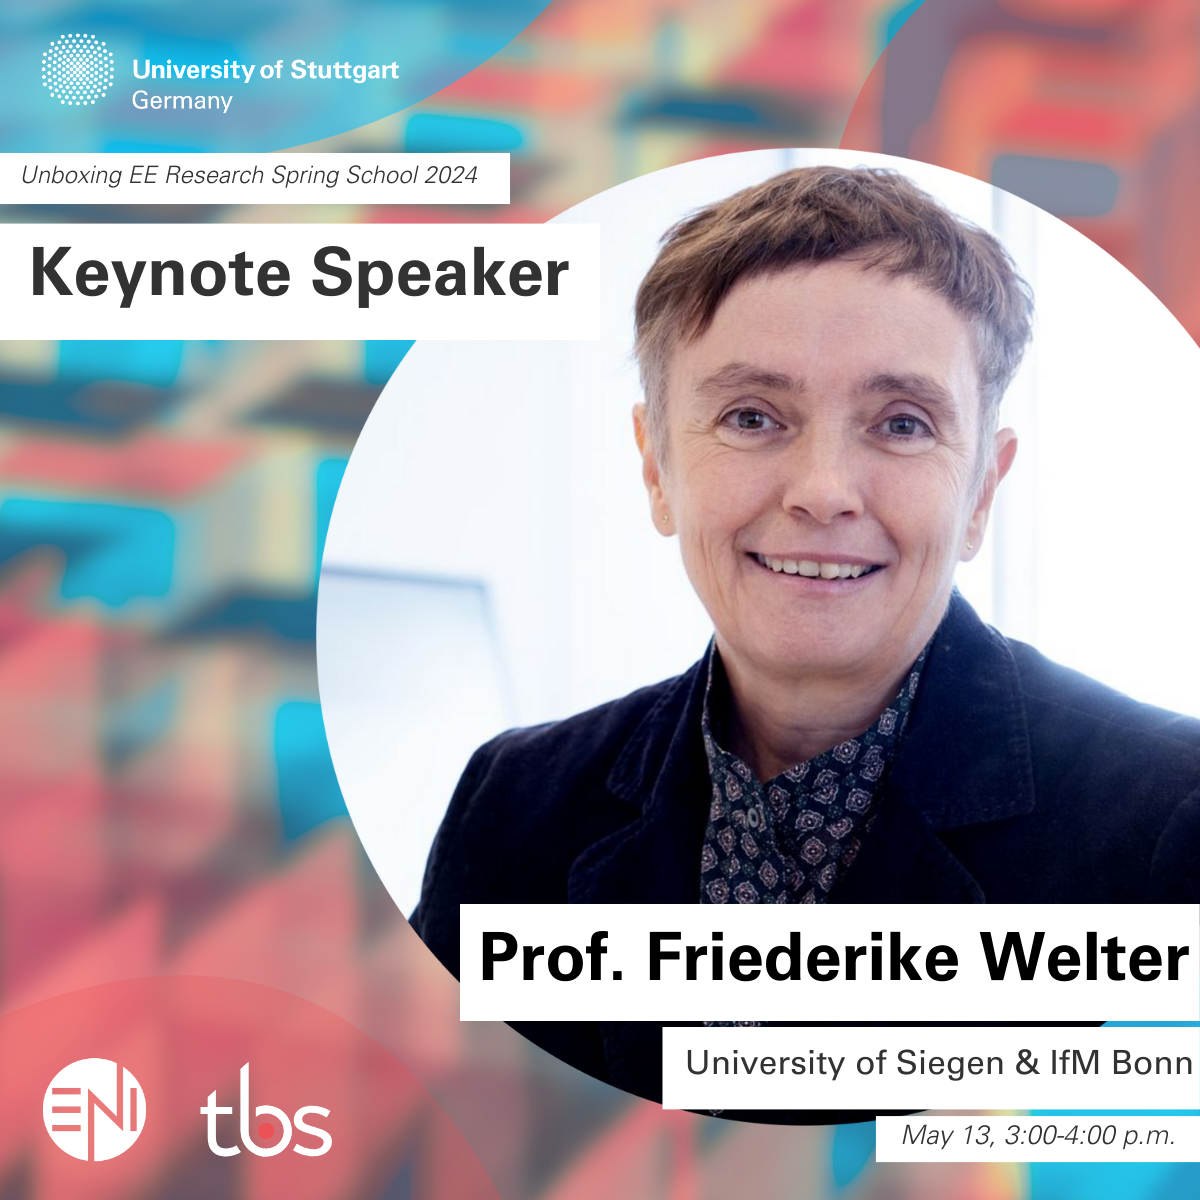 Unboxing #EERSS2024 Pt. 1: Wir begrüßen unsere Keynote-Speakerin, Prof. Friederike Welter (Universität Siegen & IfM Bonn).